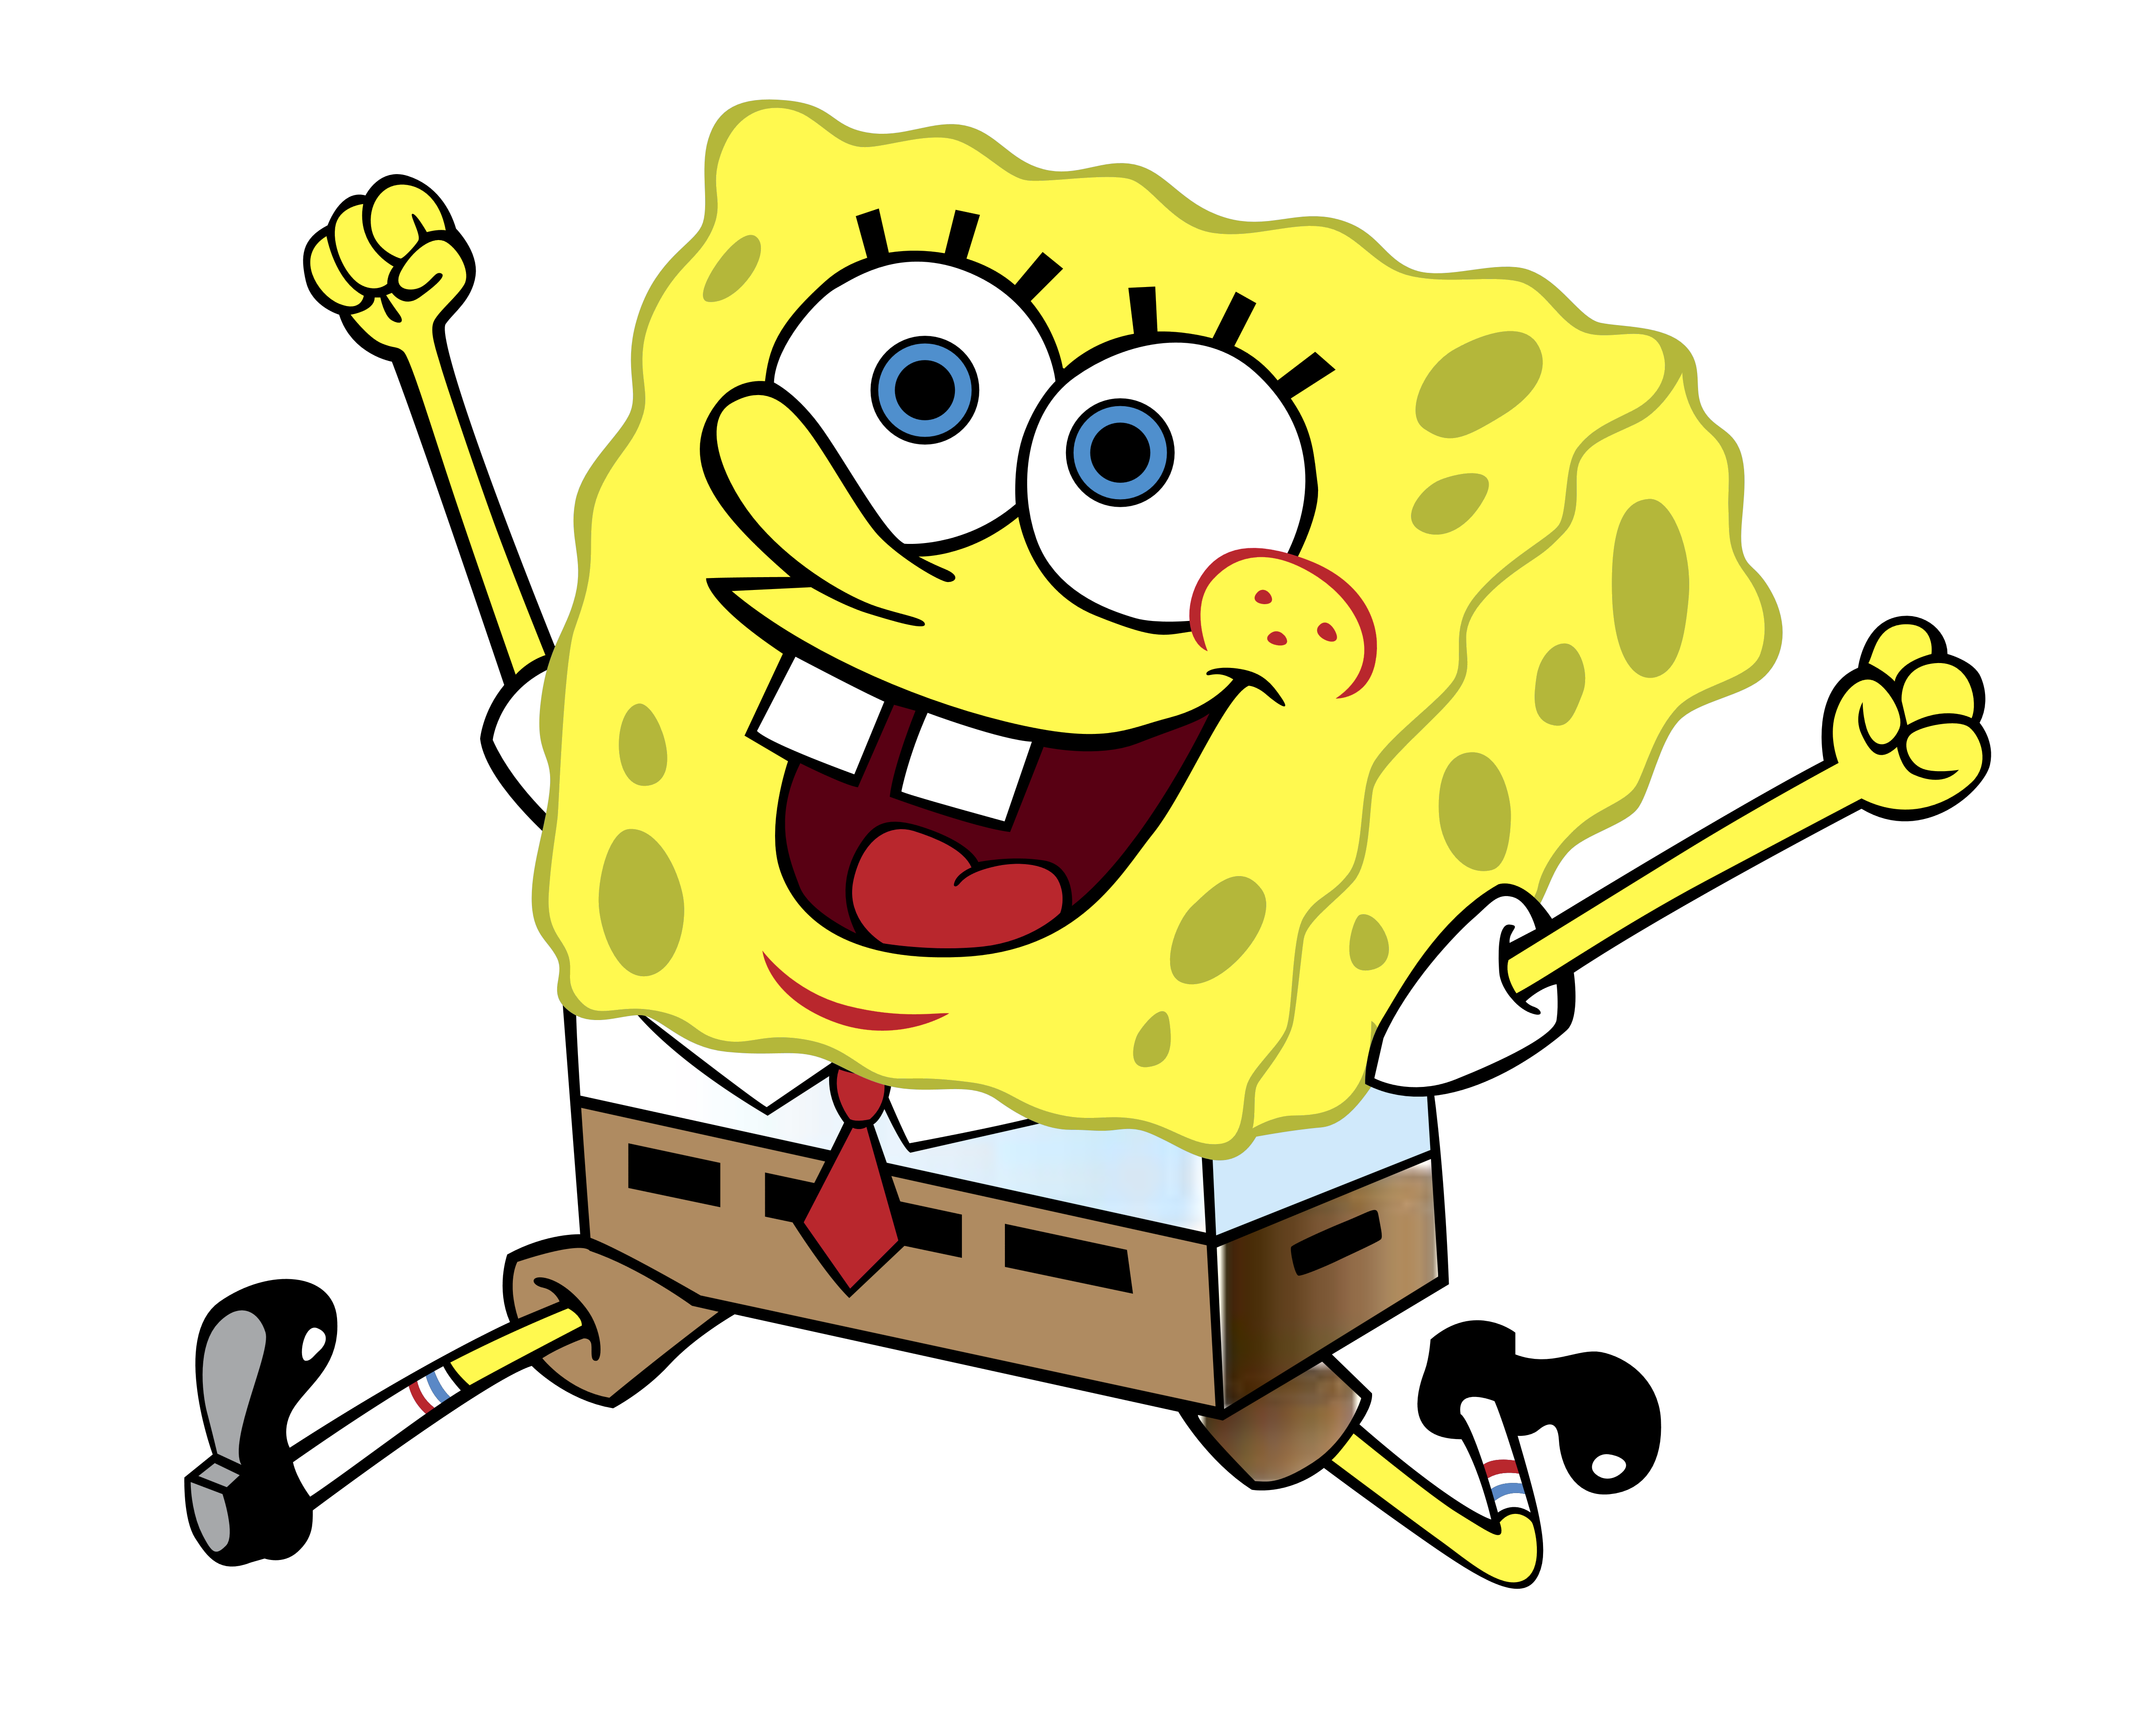 SpongeBob SquarePants - Logos Download